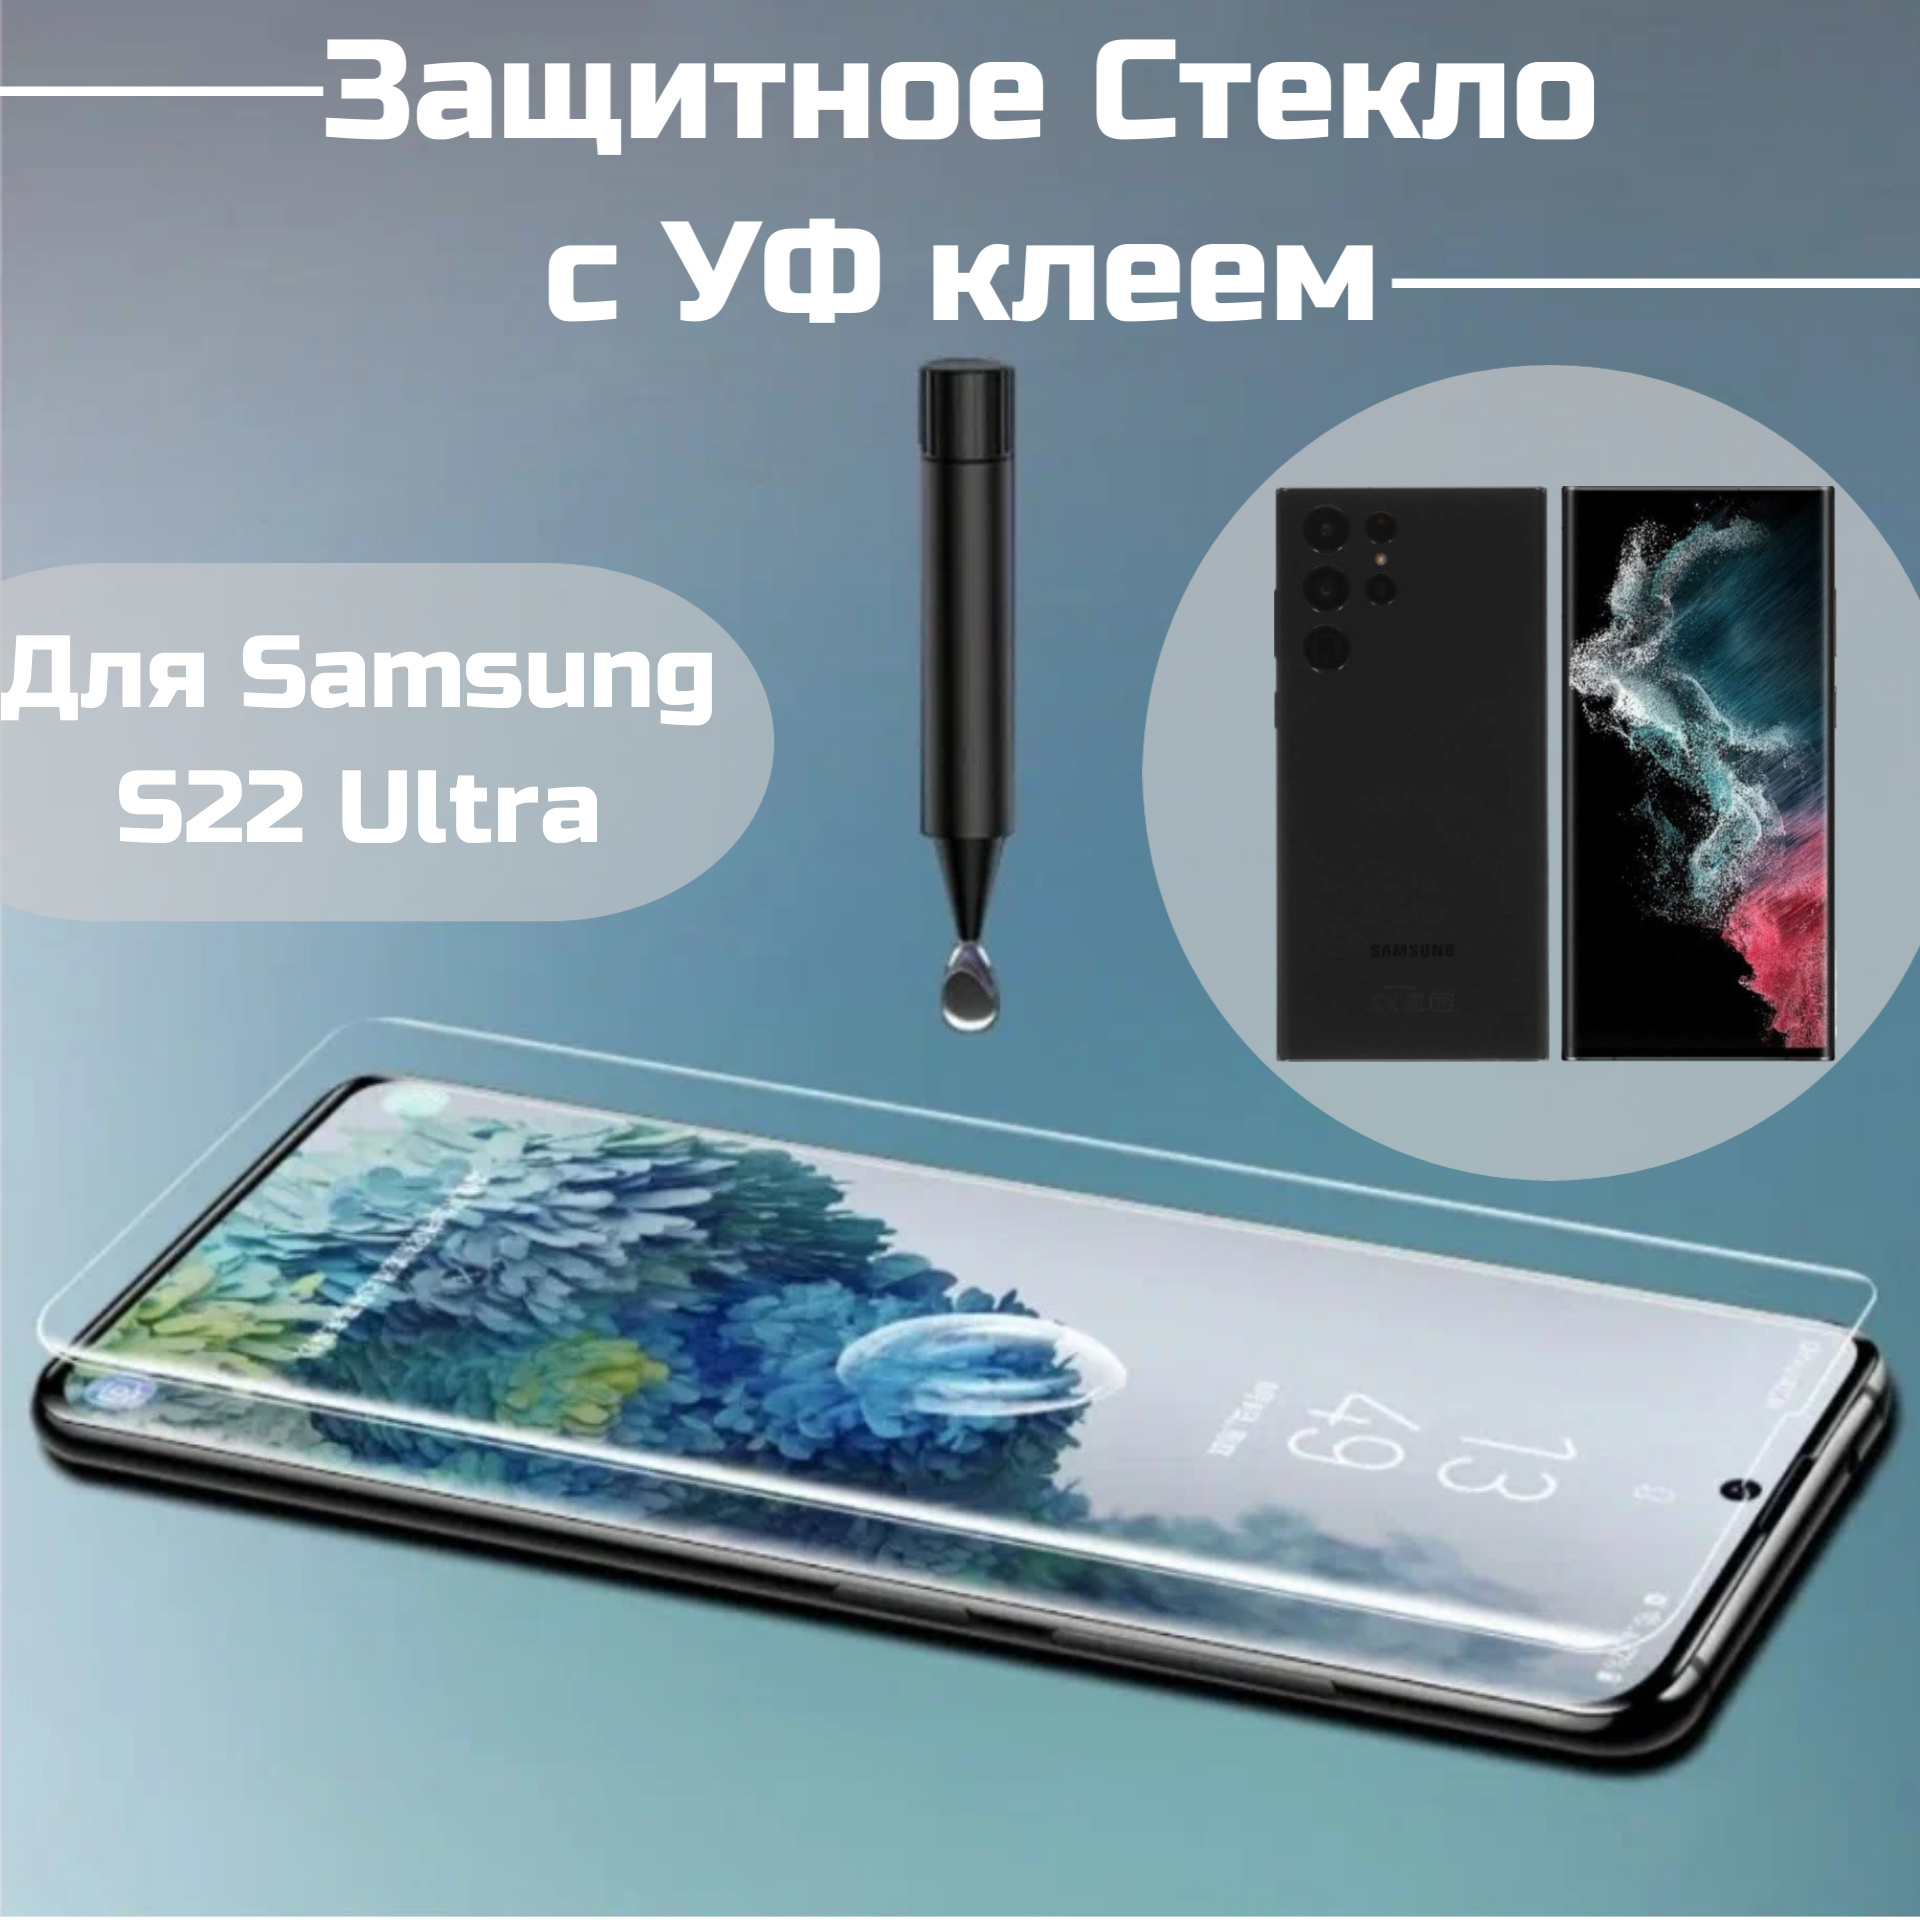 Защитное стекло Samsung S22 Ultra с уф клеем и лампой Полноэкранное стекло с22 ультра